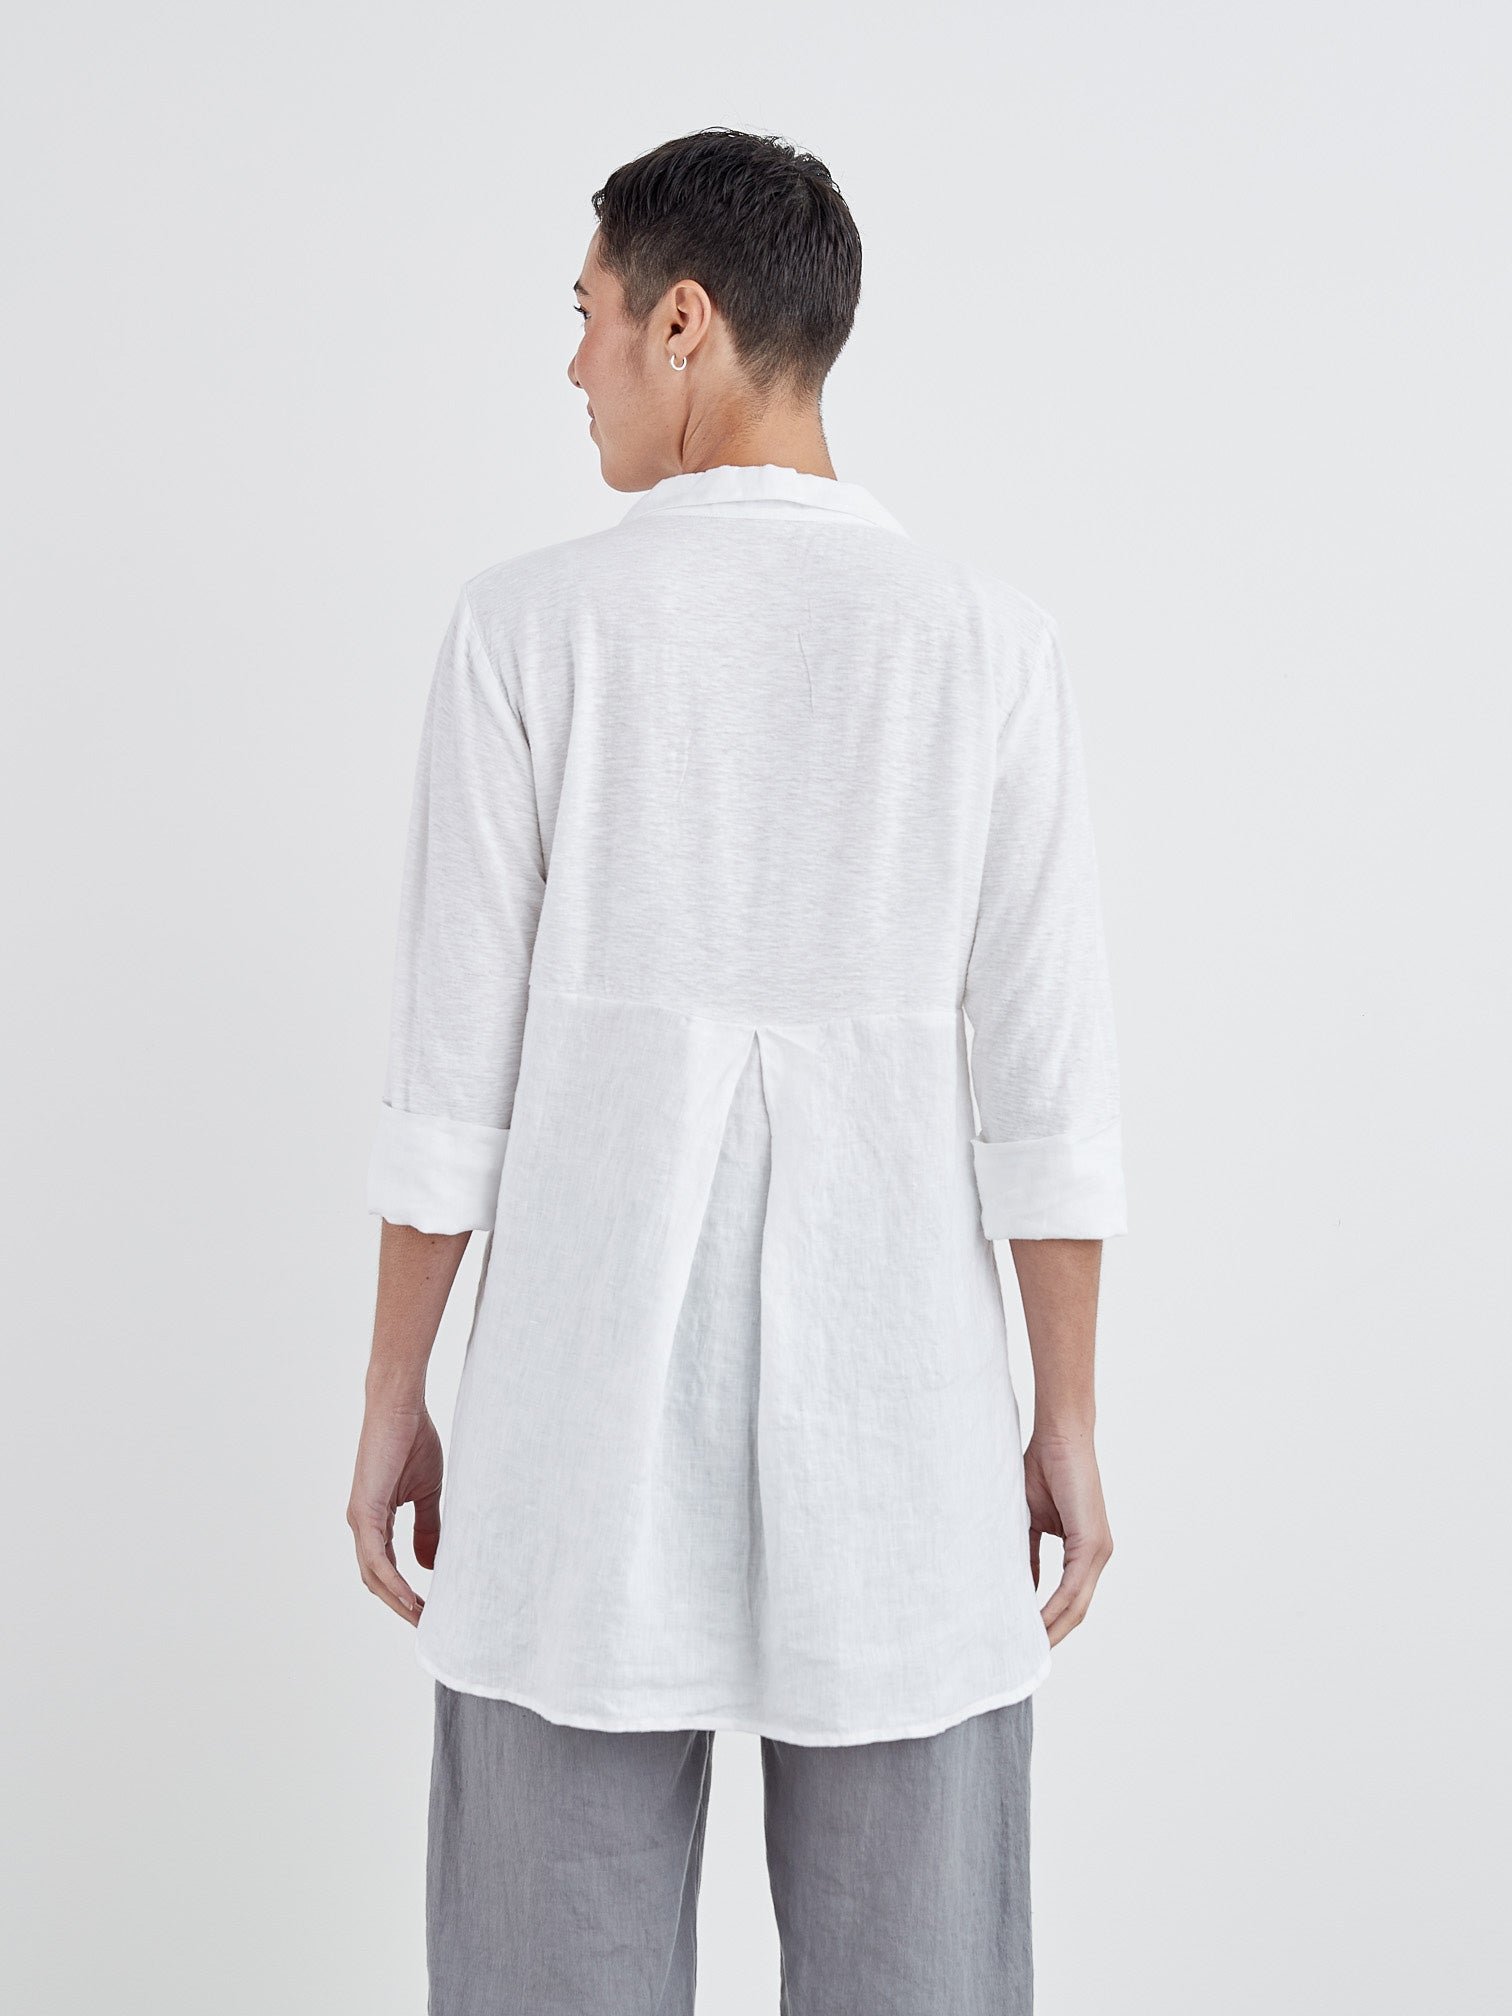 Cut Loose 5706276WT White Cotton Linen Blend Easy Shirt